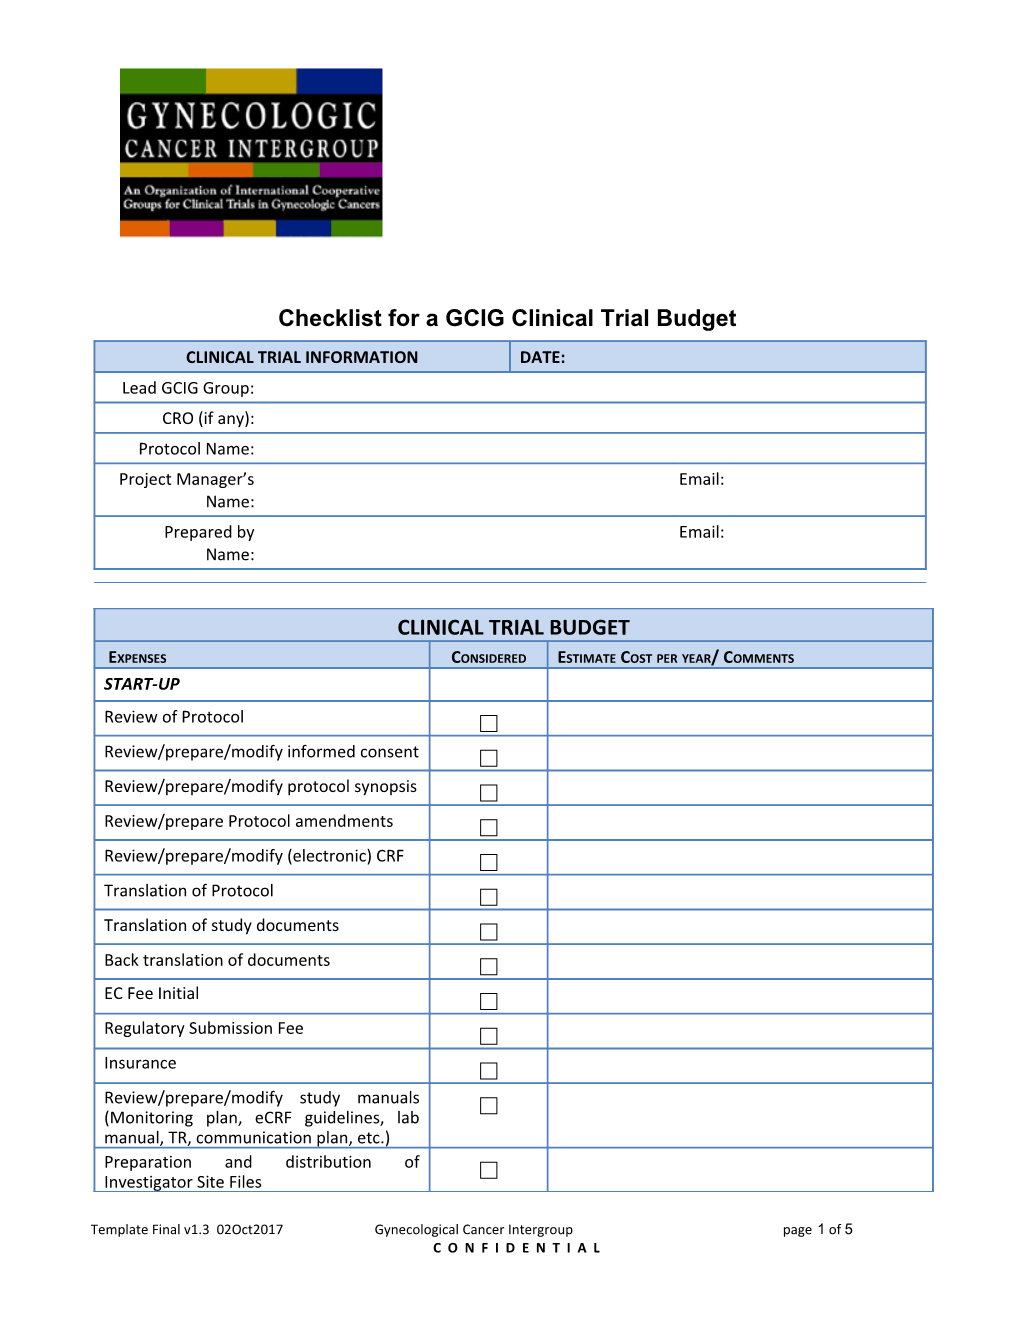 Checklist for a GCIG Clinical Trial Budget